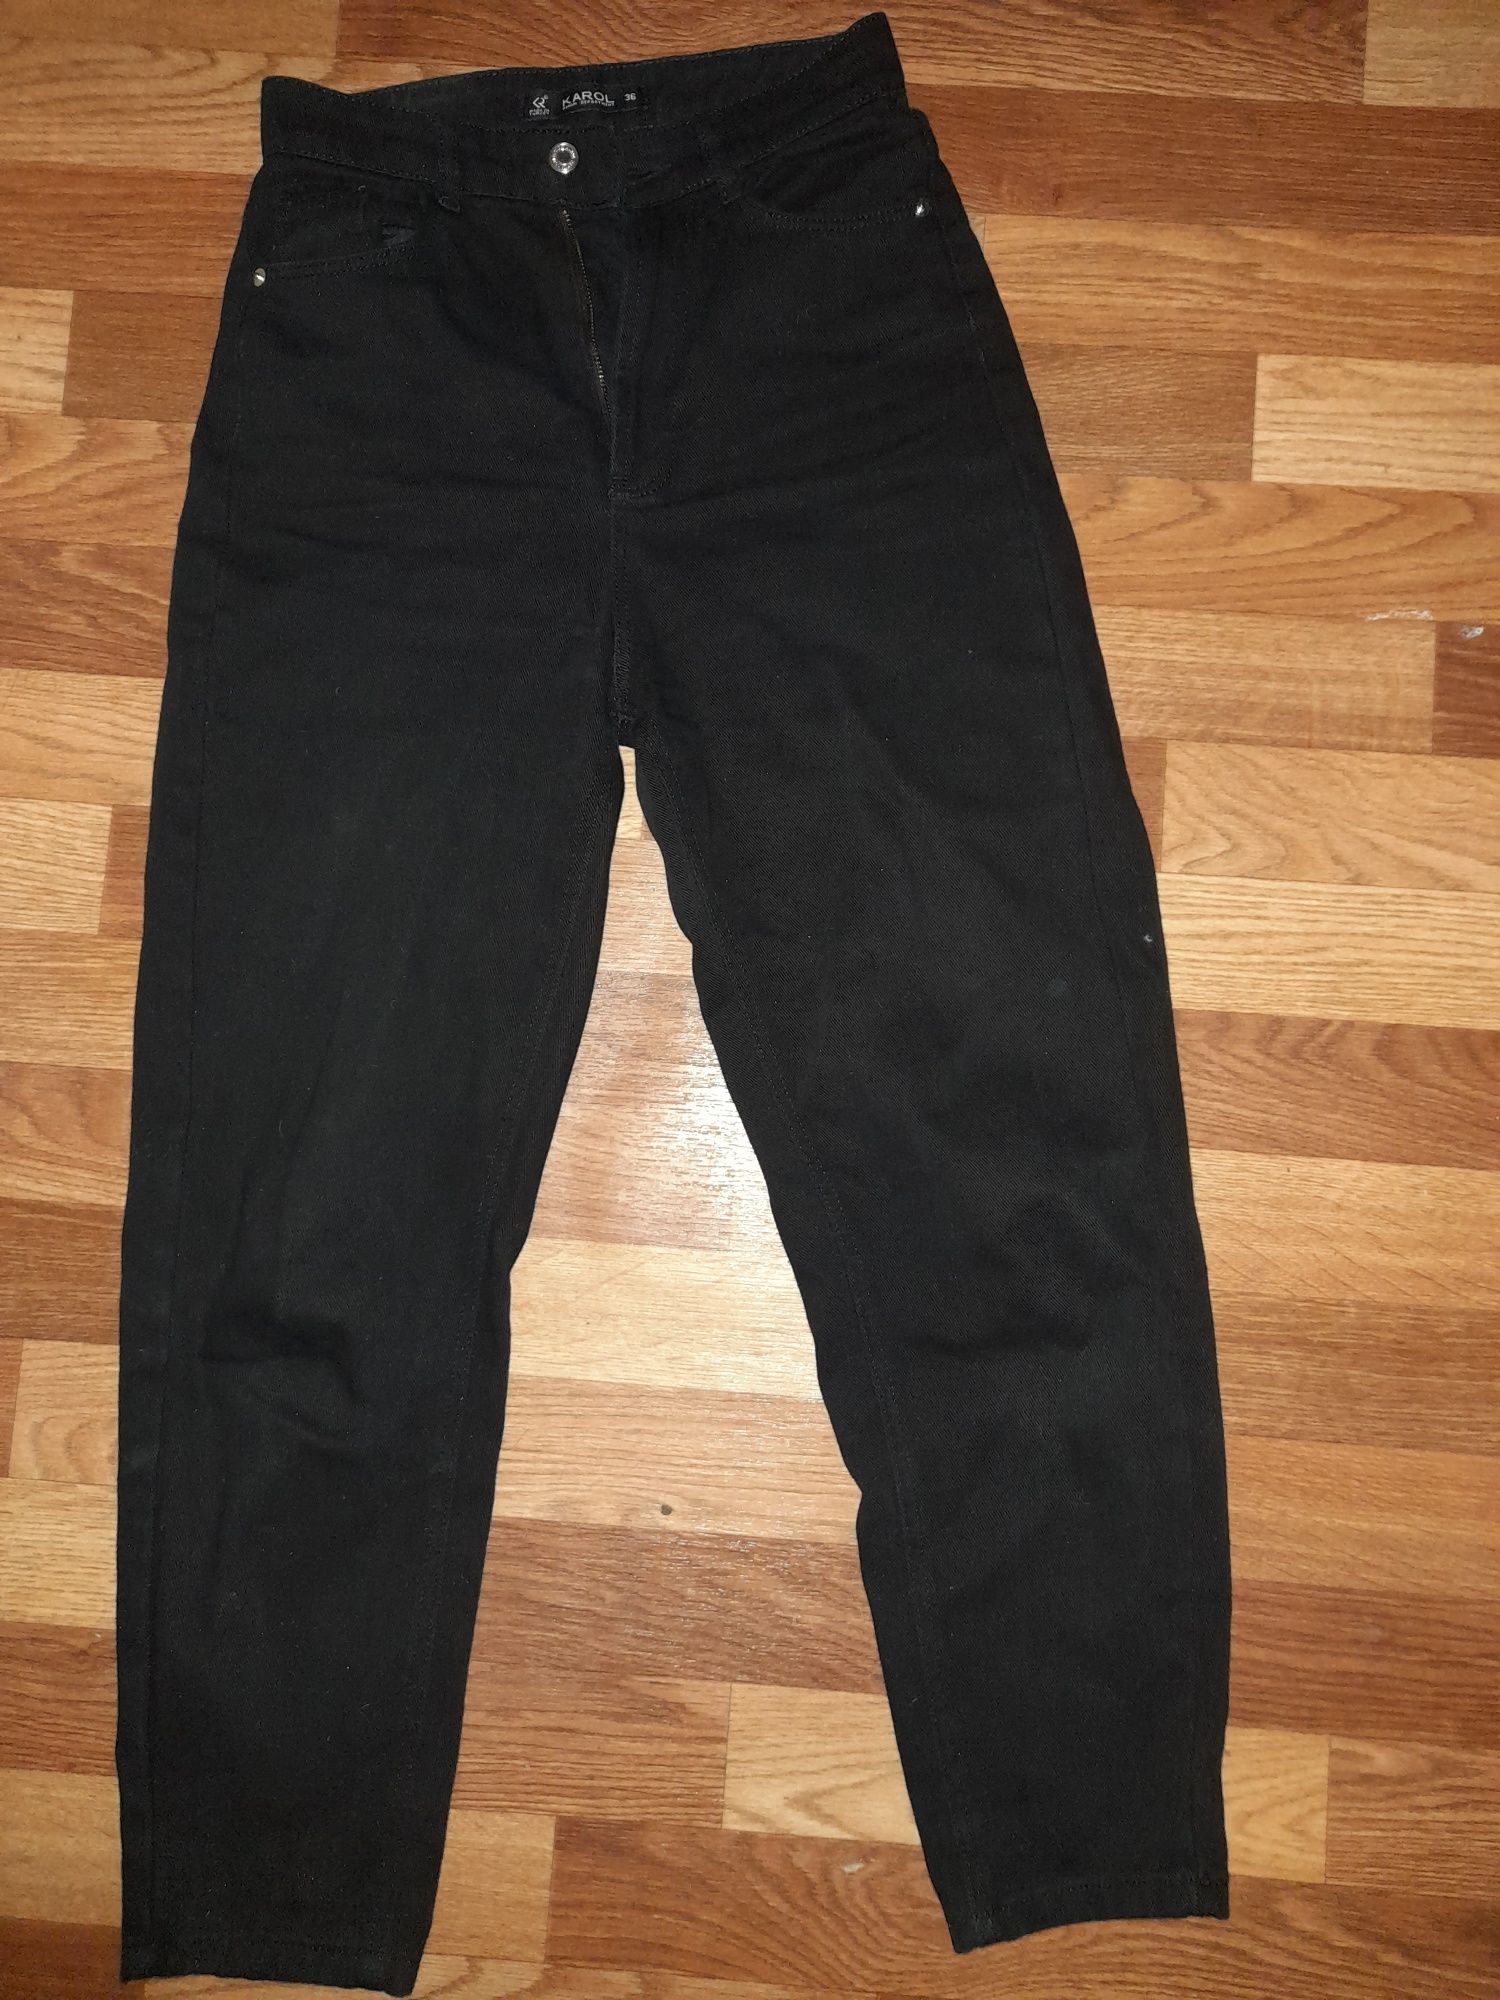 Джинсы чёрные mom широкие джинсы высокая посадка завышеная талия клеш